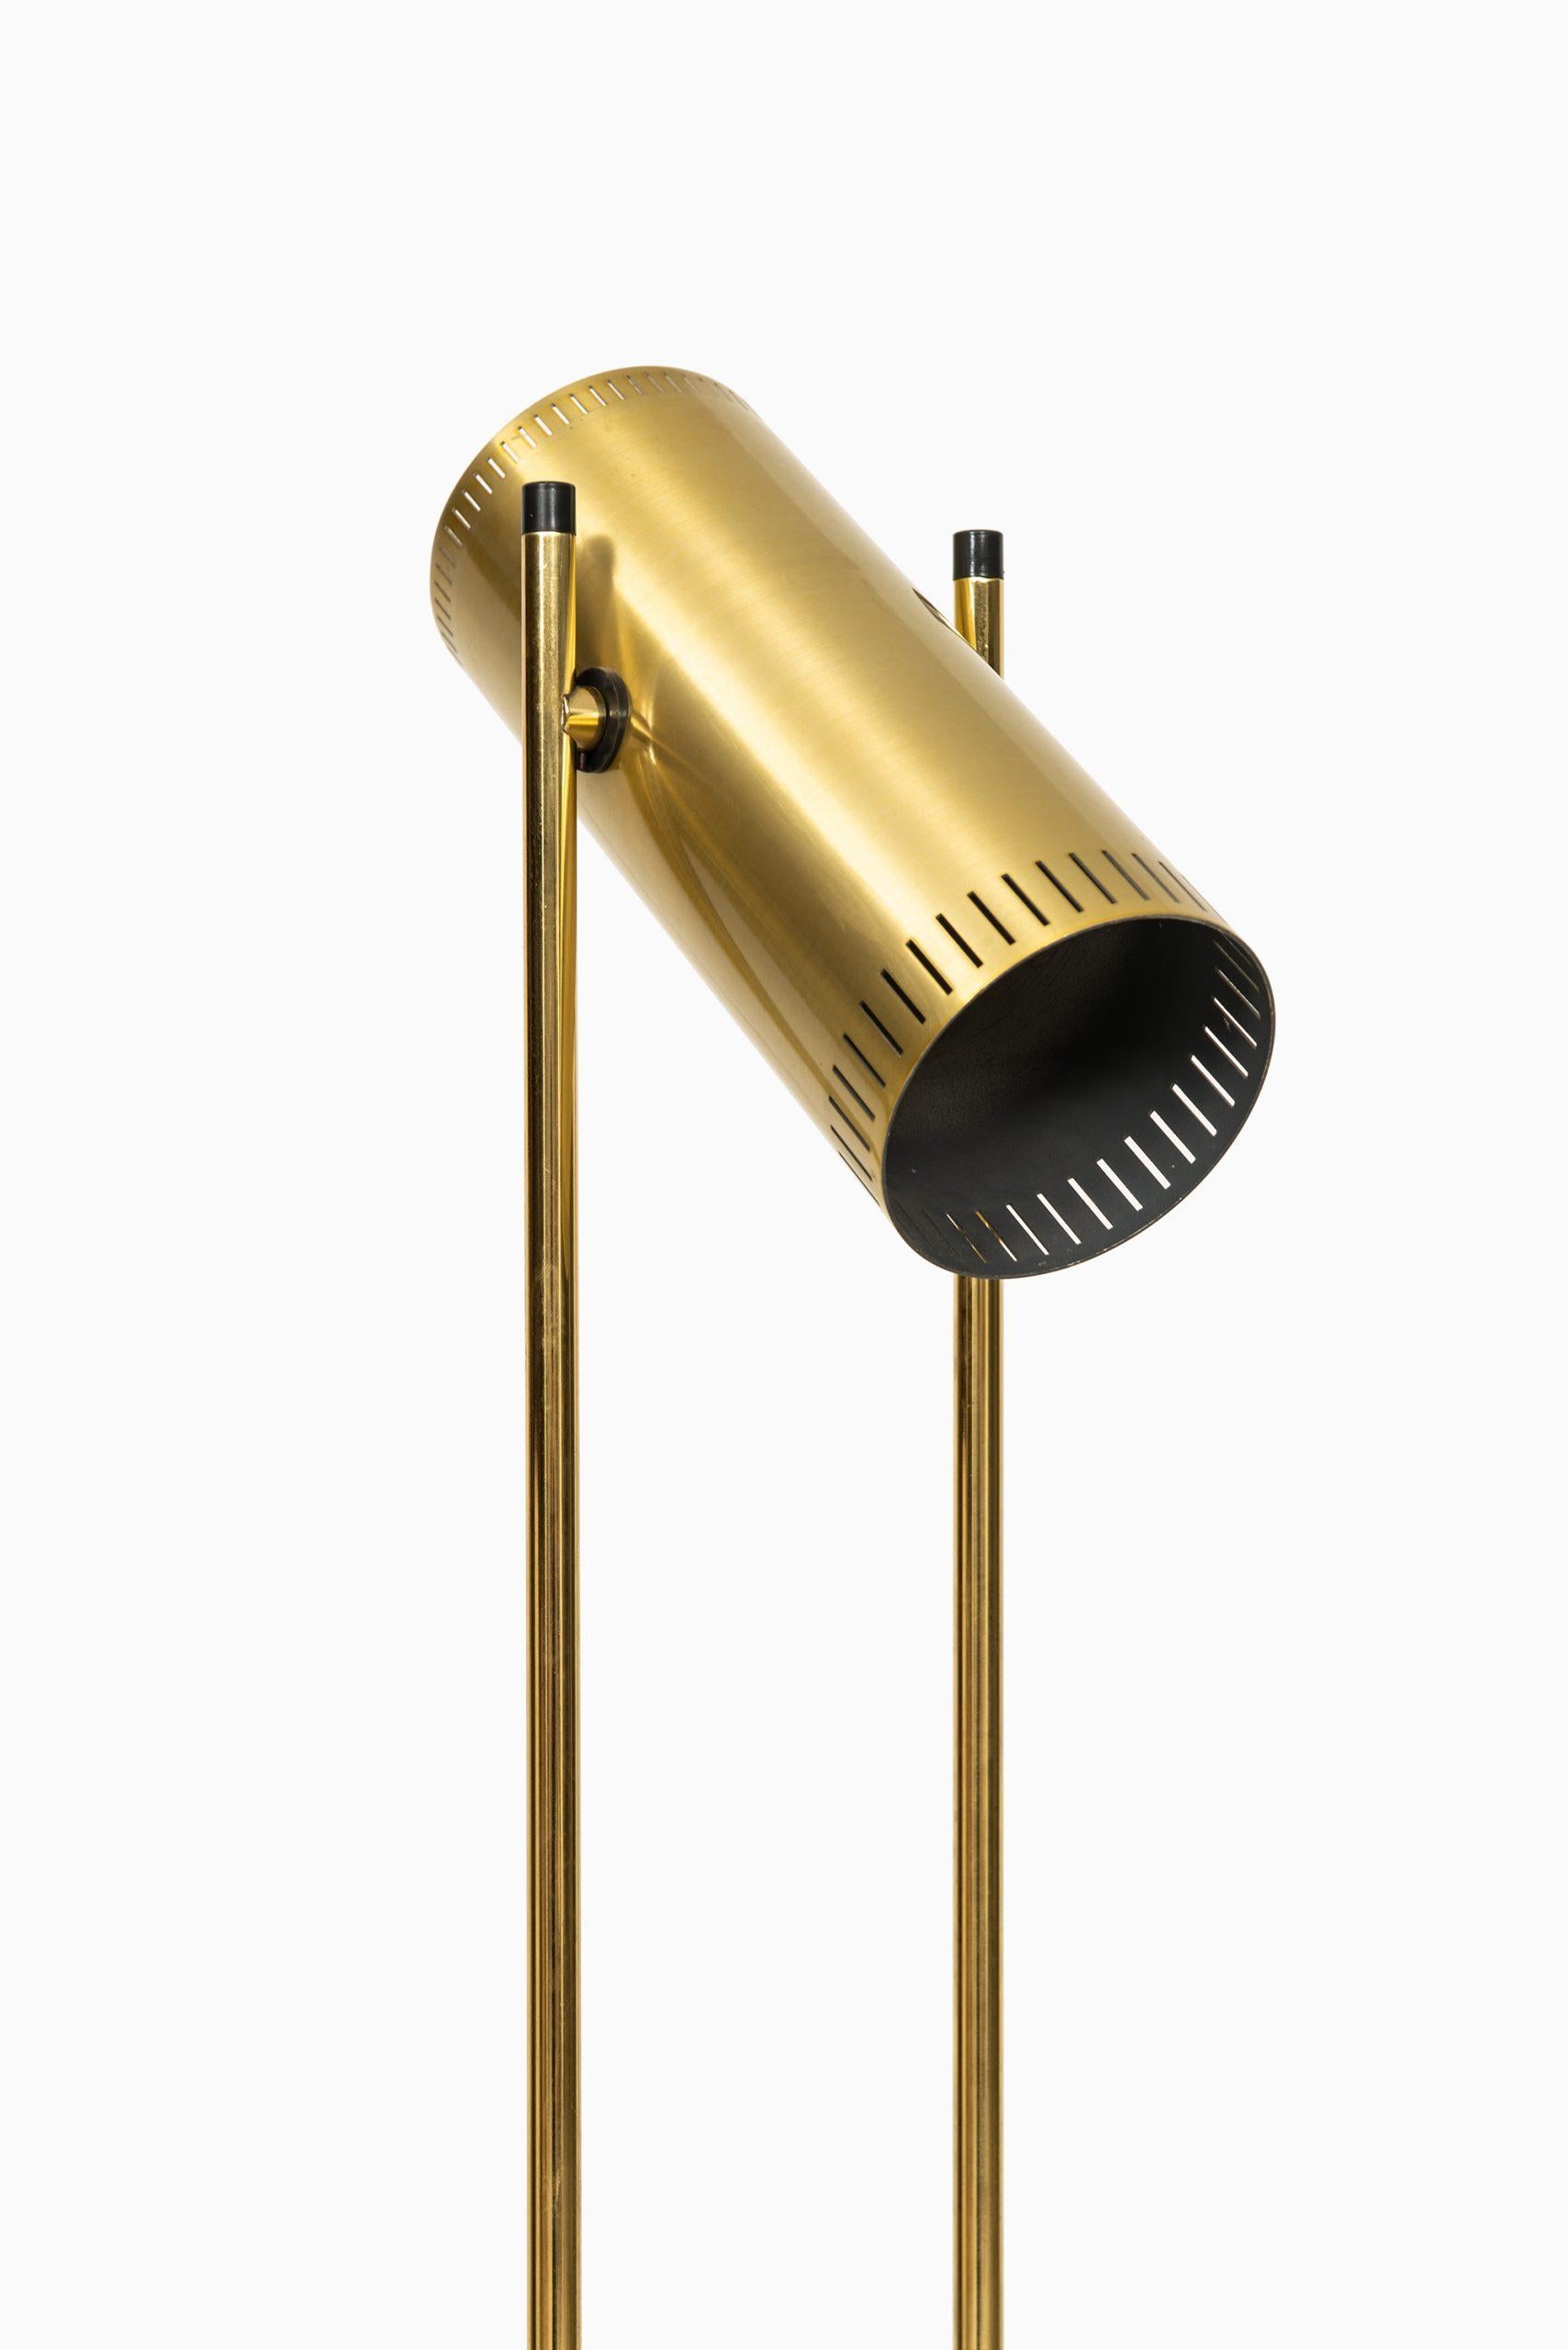 Floor lamp model trombone designed by Jo Hammerborg. Produced by Fog & Mørup in Denmark.